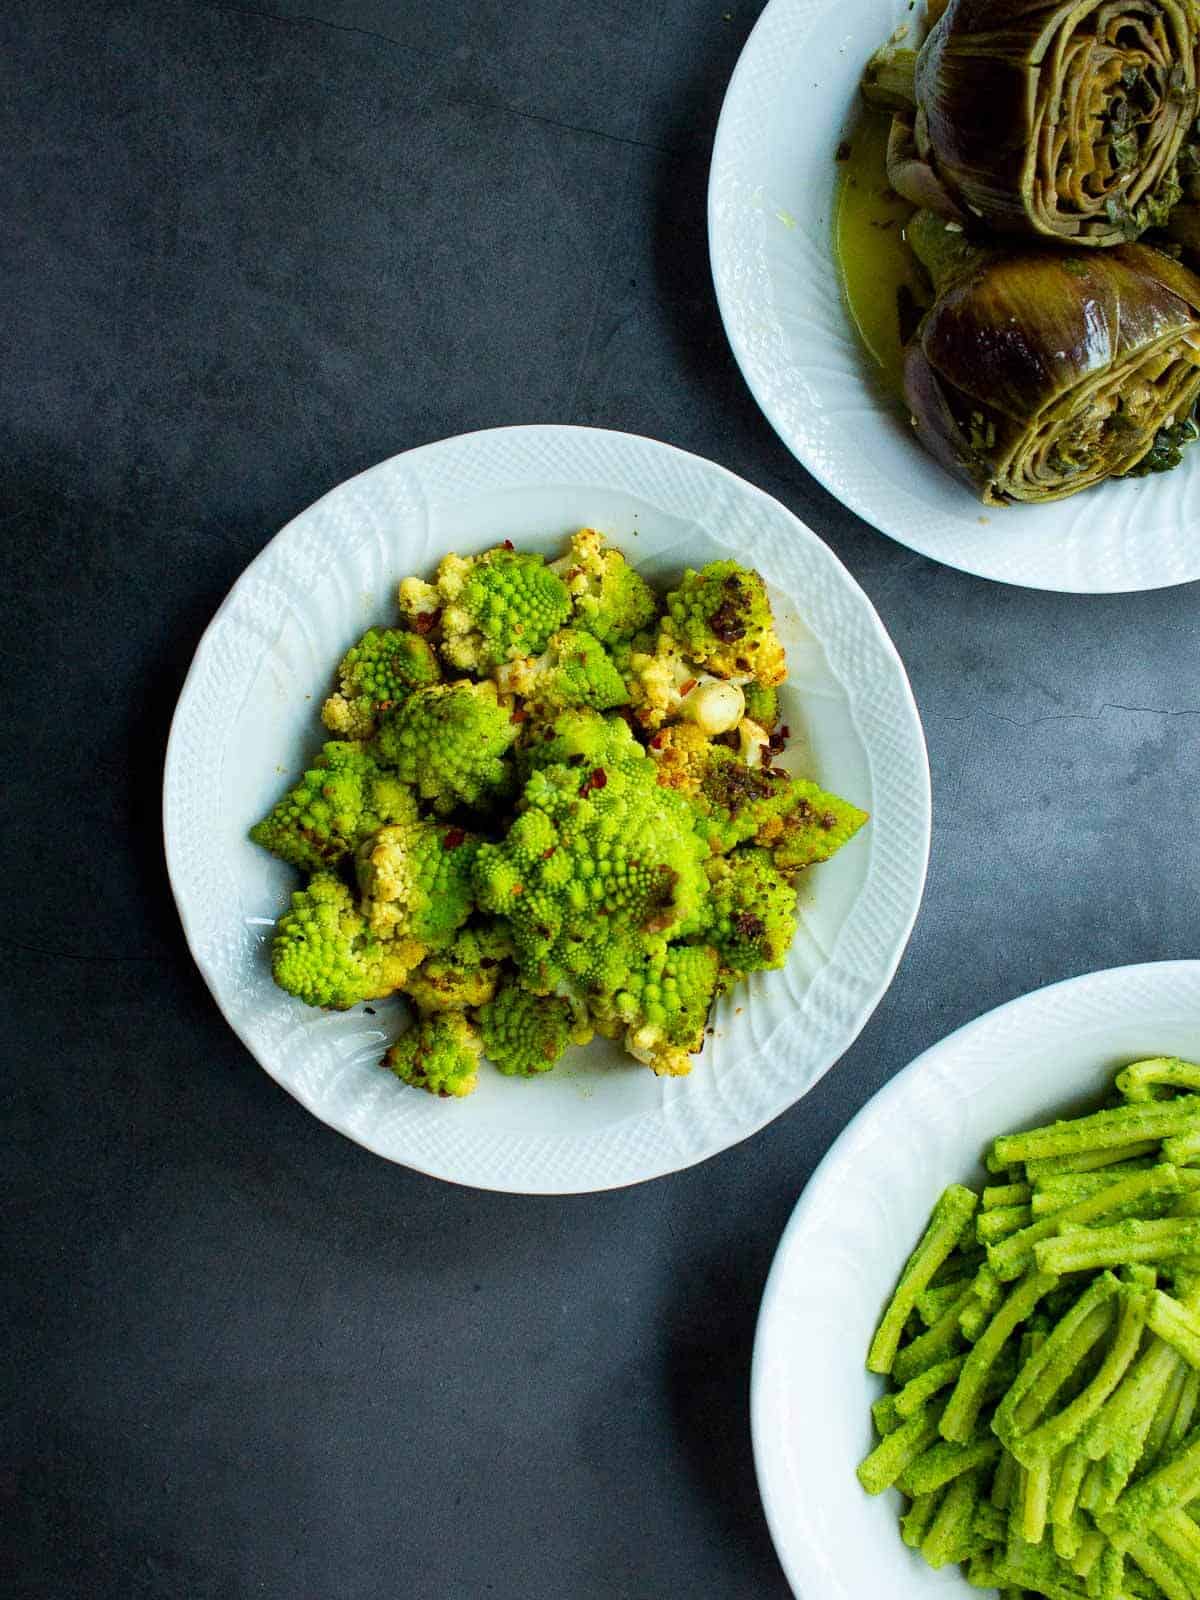 brócoli romanesco acompañado de alcachofas y judías verdes, servidos en platos diferentes.